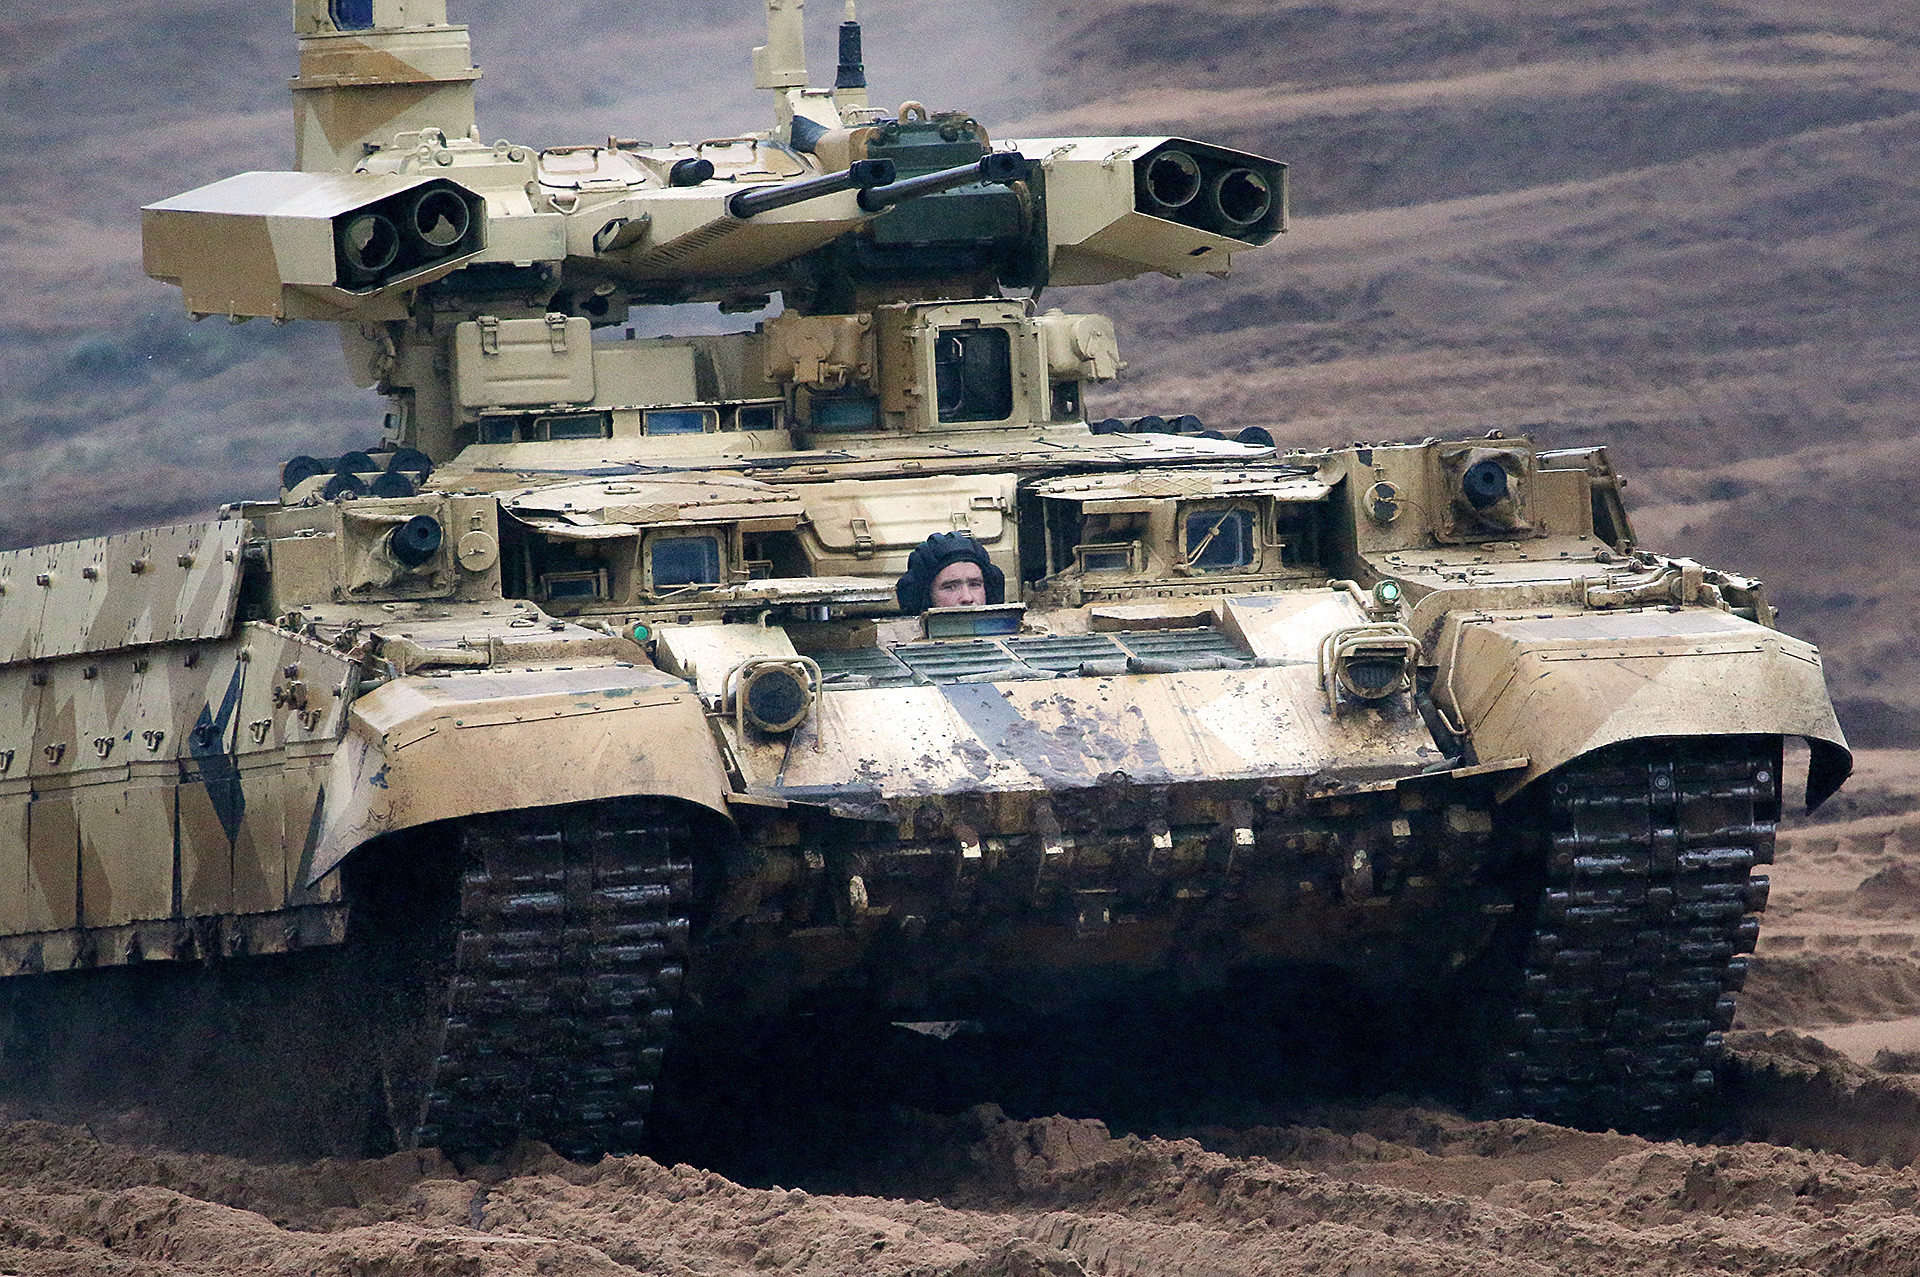 Тешка борбена машина пешадије БМПТ-72 („Терминатор 2“) на маневрима Запад 2017, које су заједно извеле оружане снаге Русије и Белорусије.